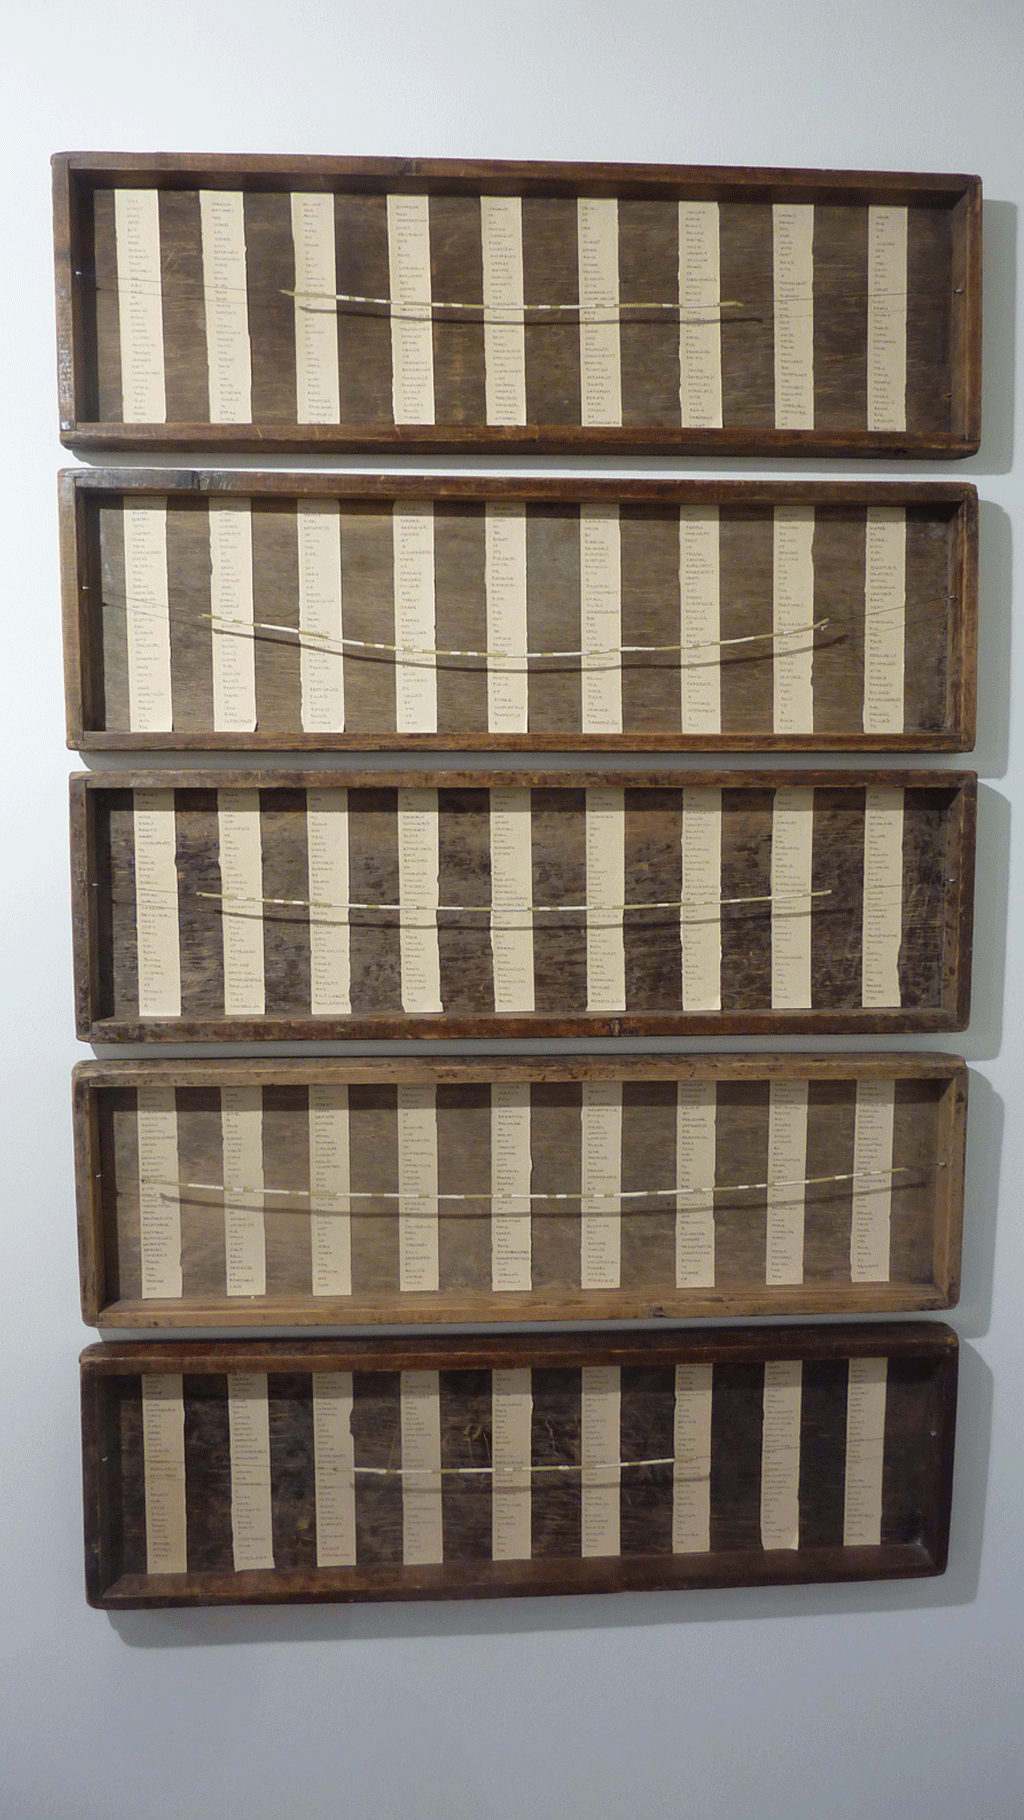 Inventory - Holz, Wachs, Faden, Schrauben, Acryl, Tusche, Papier - 1991 - 5-teilig, je 29,5 x 98 x 5 cm  